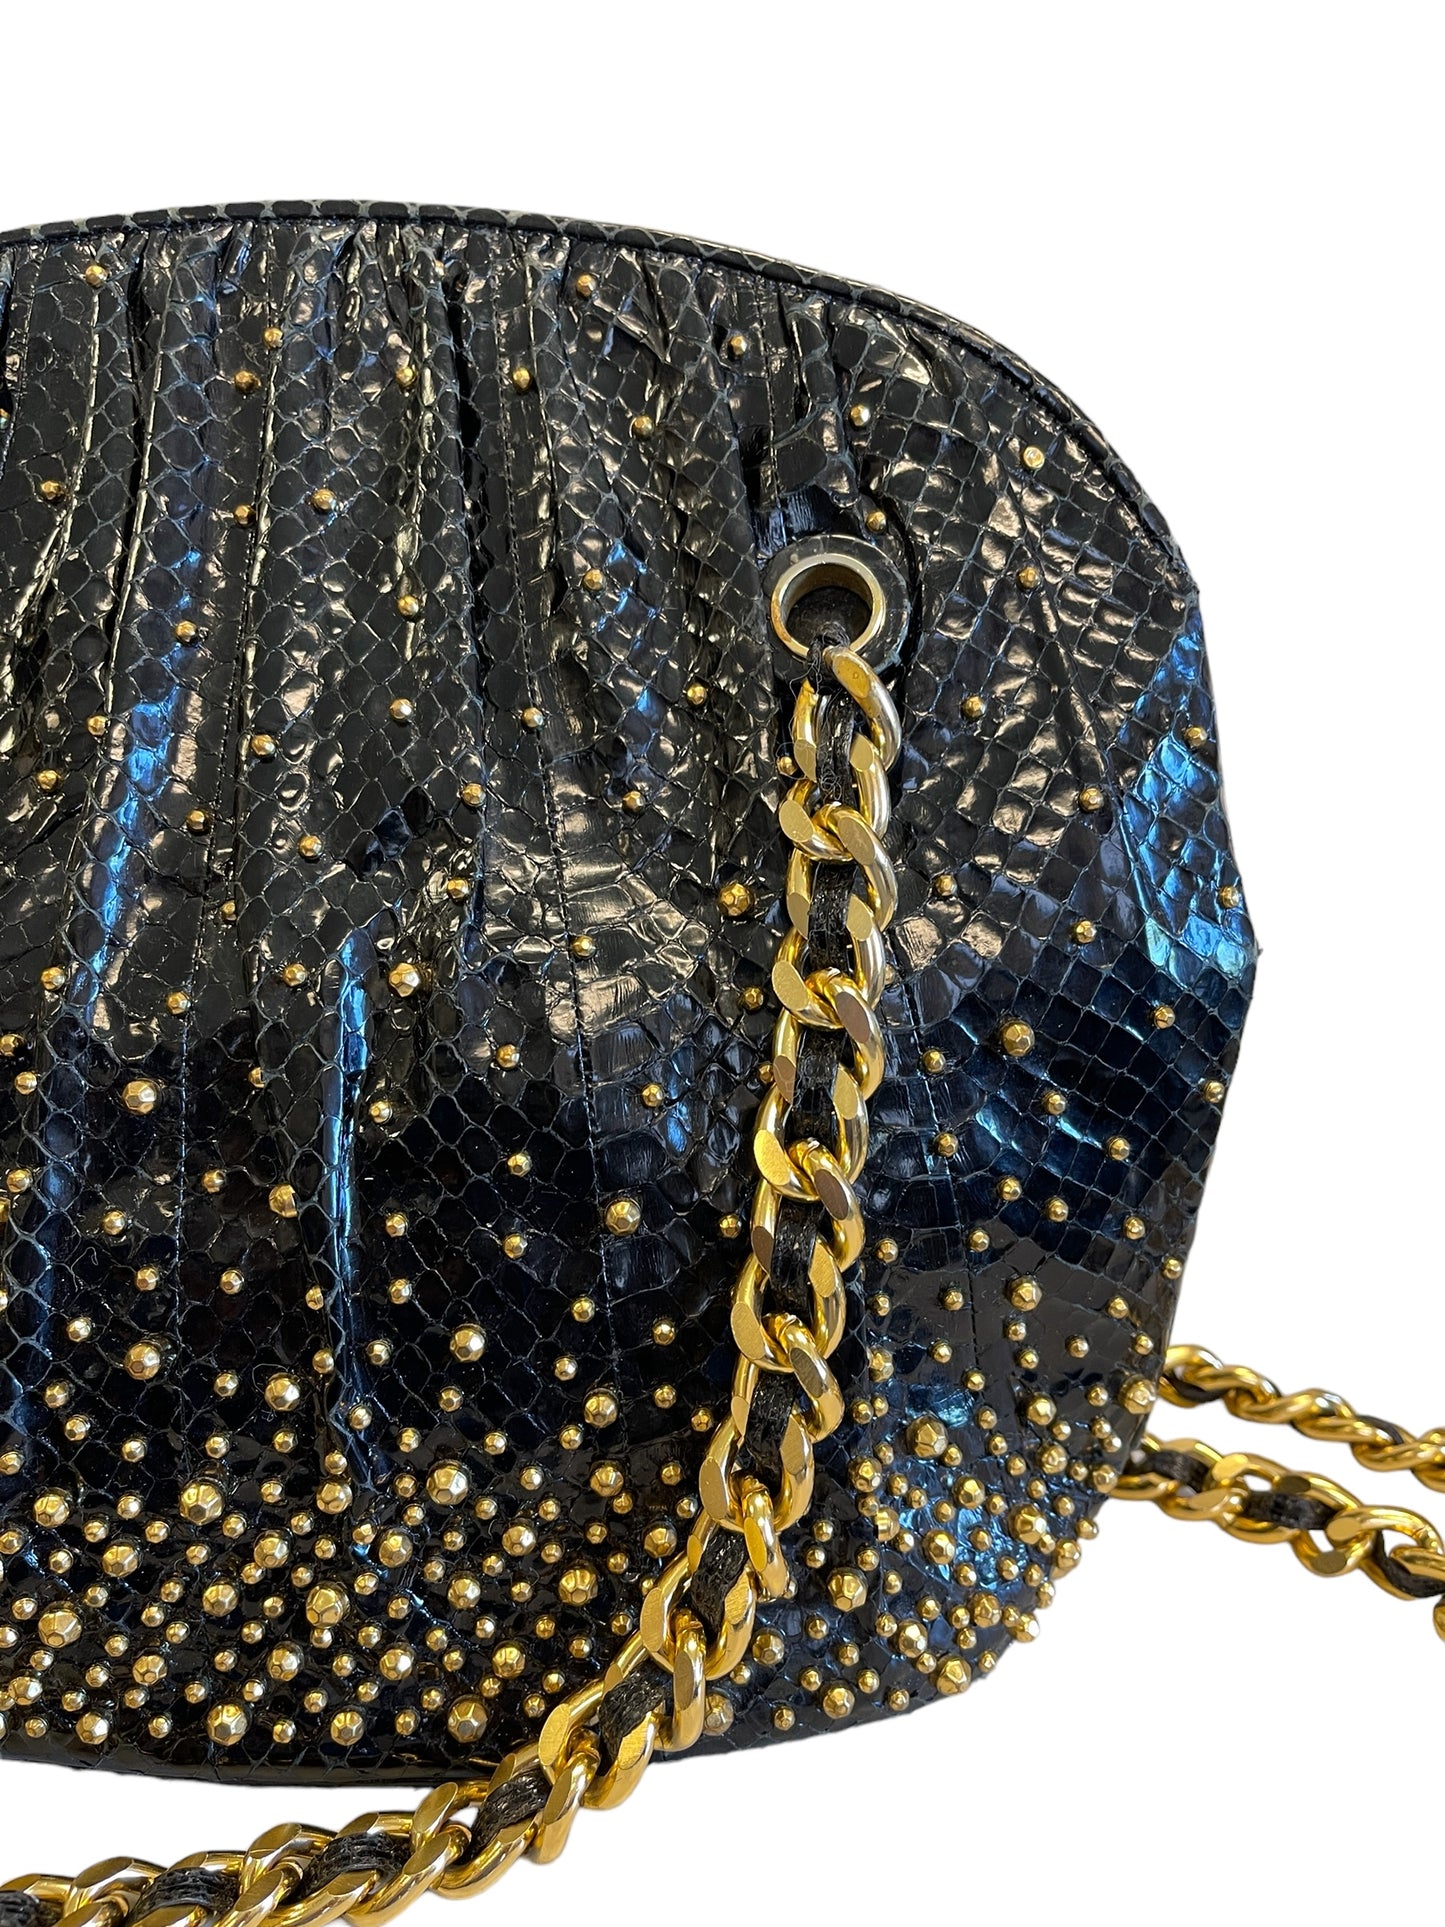 Judith Leiber Gold Studded Snake Skin Chain Bag